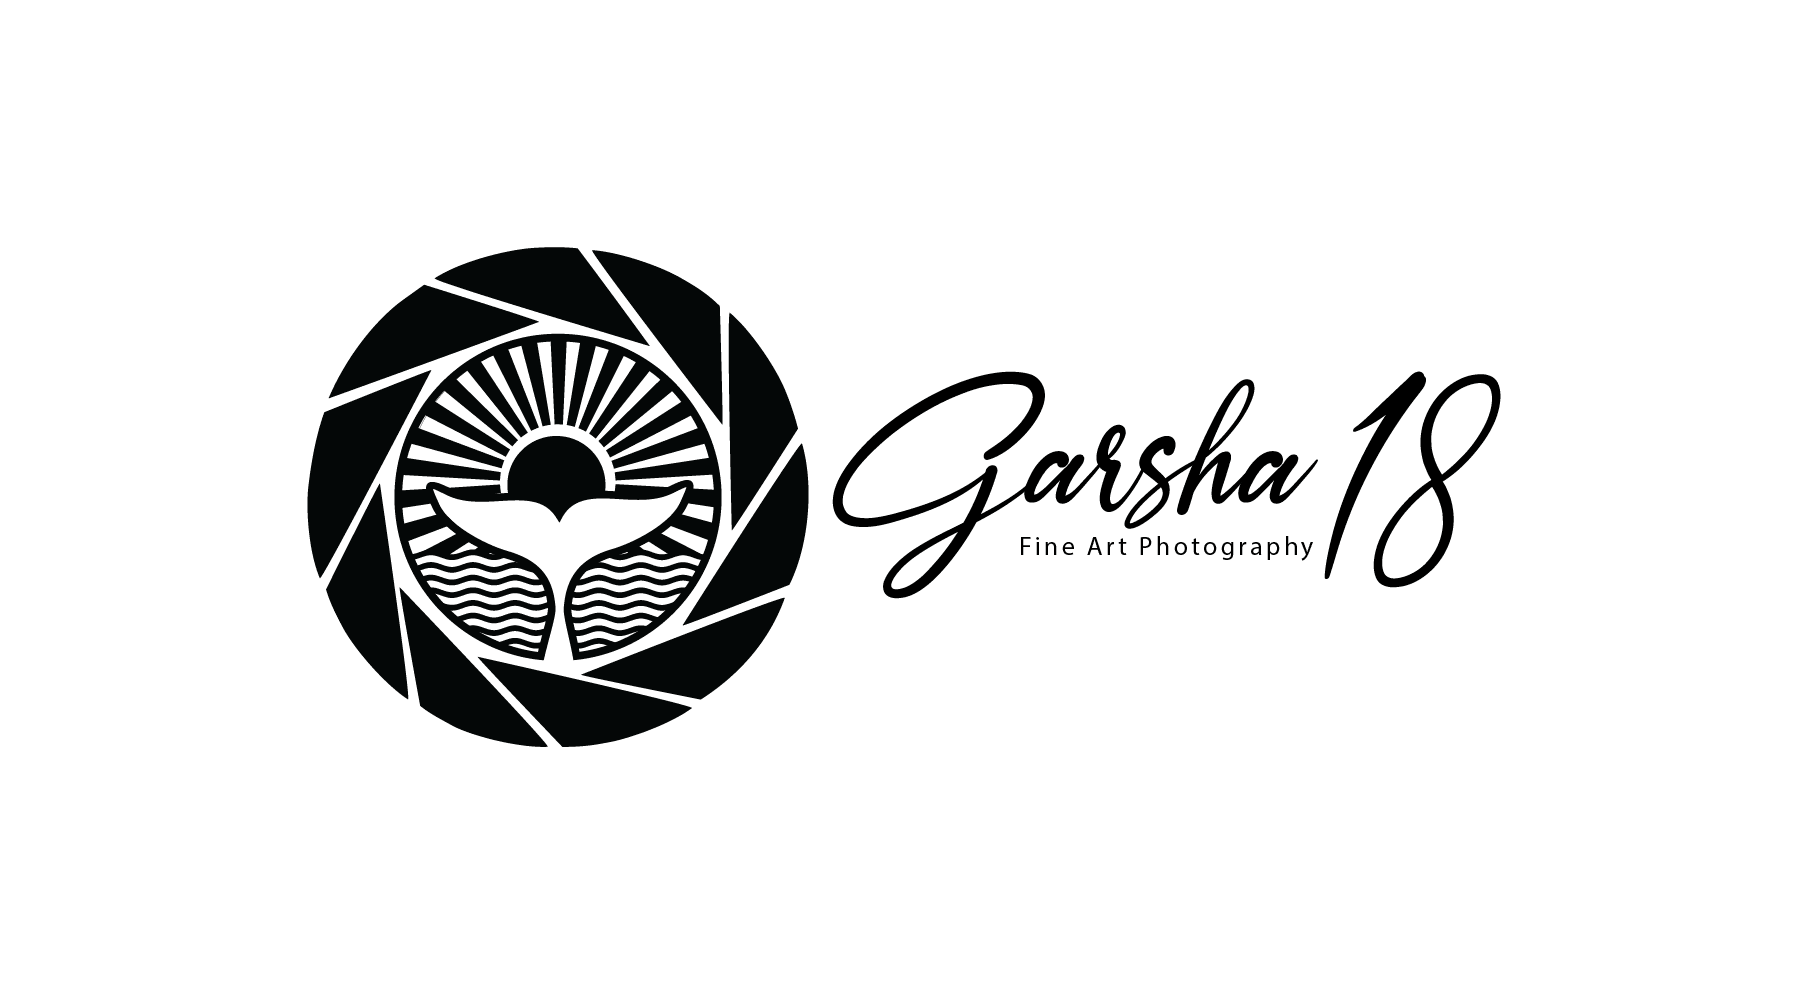 Garsha18 Fine Art Photography